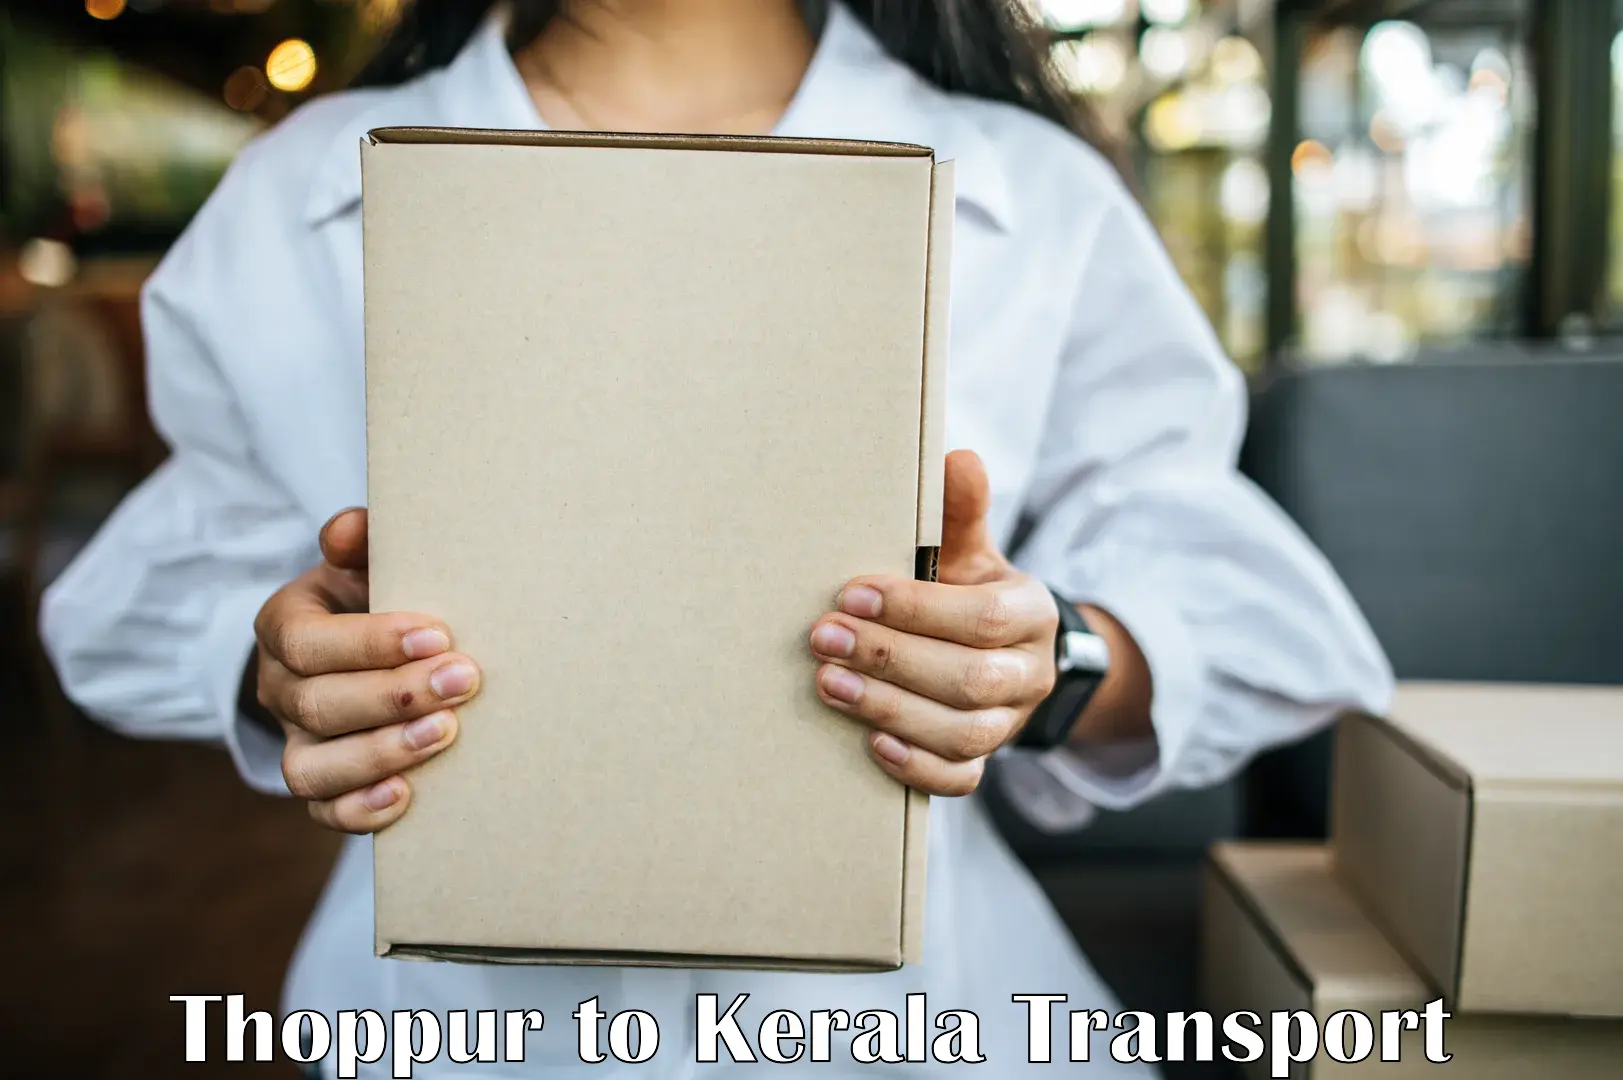 Pick up transport service Thoppur to Kuthuparamba